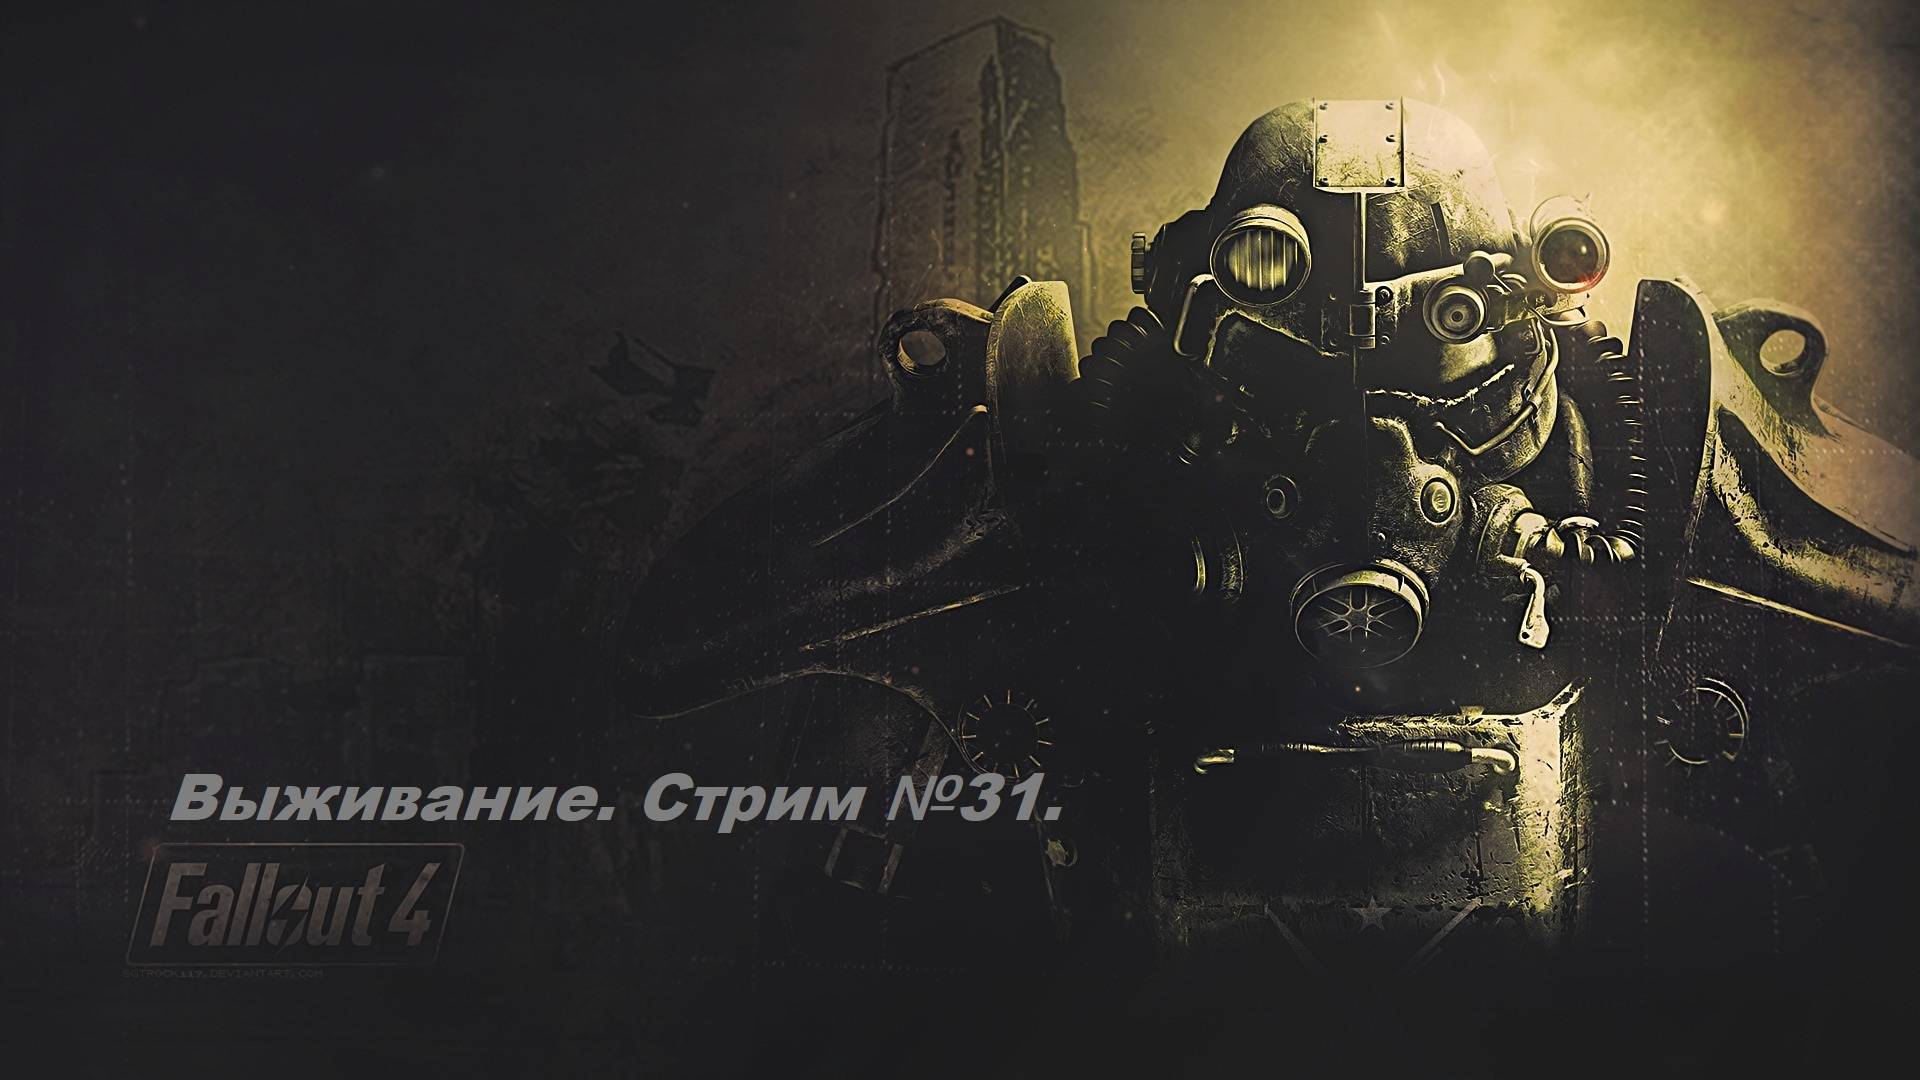 Fallout 4. Прохождение на уровне выживания первый раз! (Новичек без силовой брони) Стрим №31.